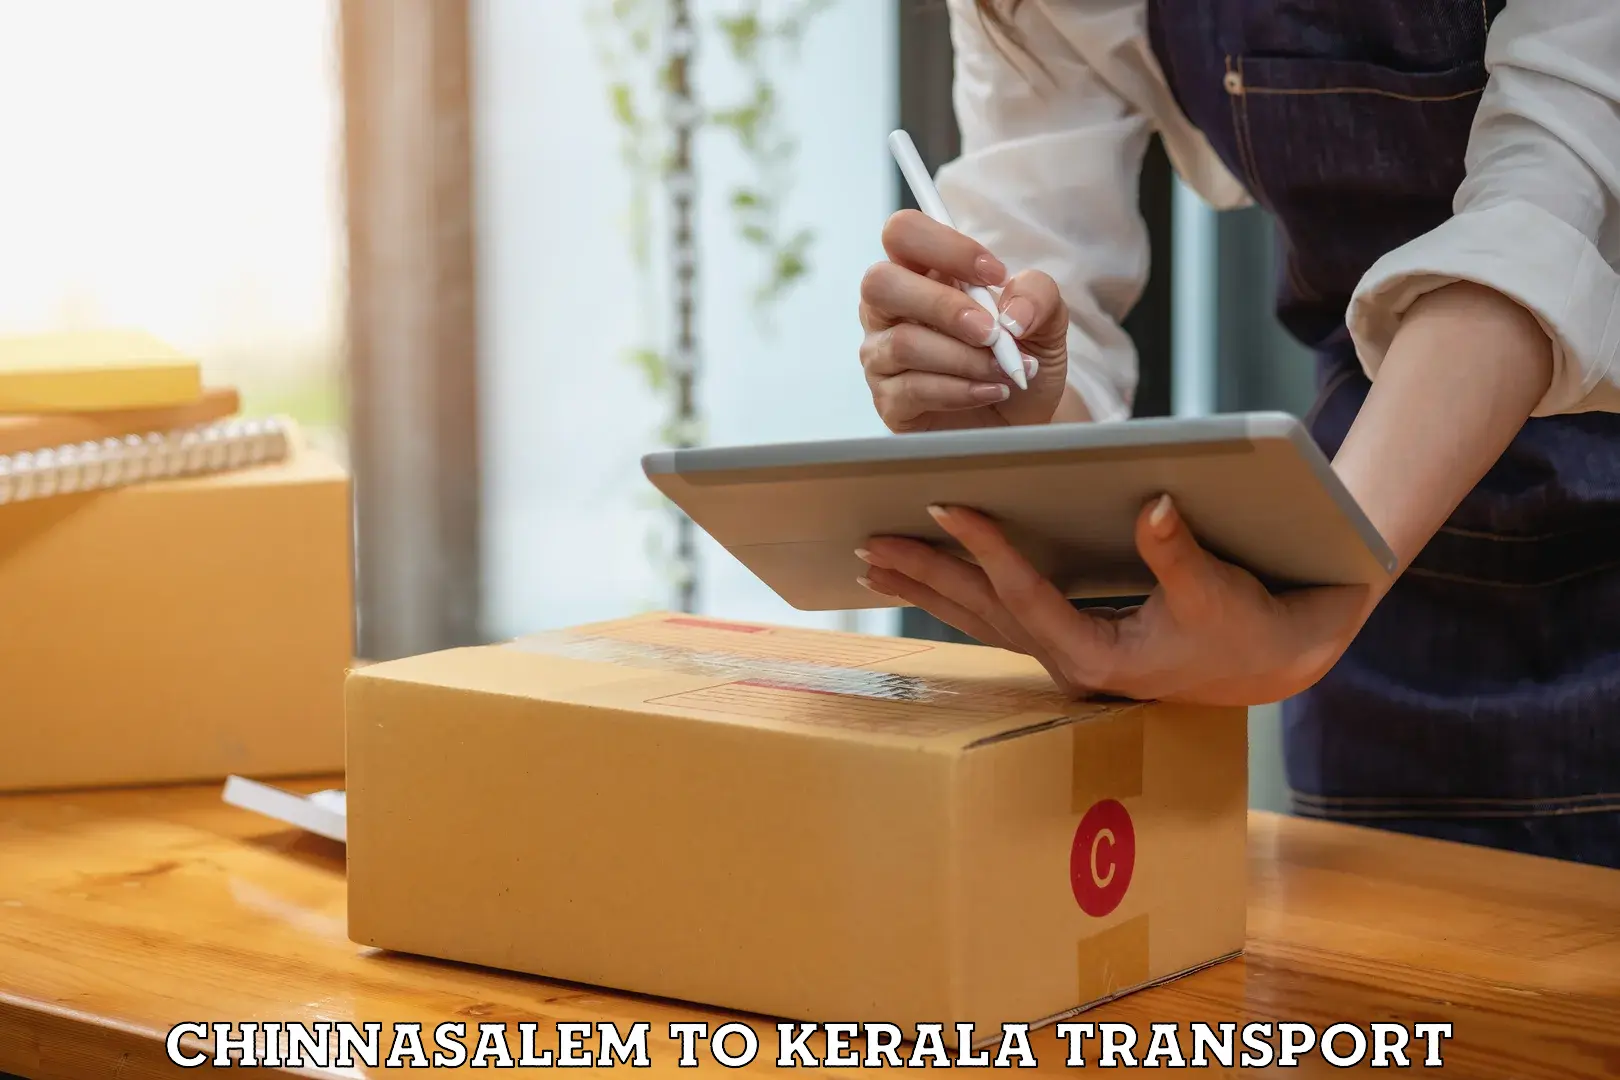 Road transport online services Chinnasalem to Kochi